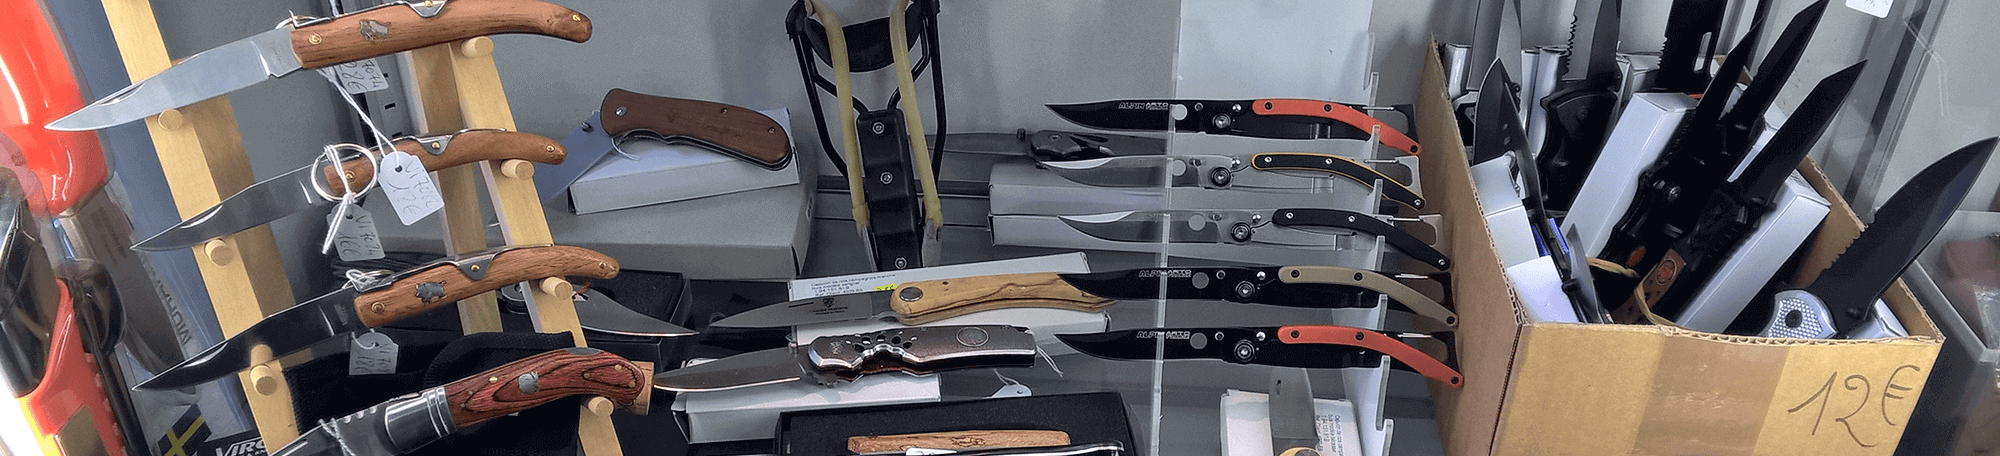 Art du Cuir - ventes de couteaux de cuisines sur Pontarlier